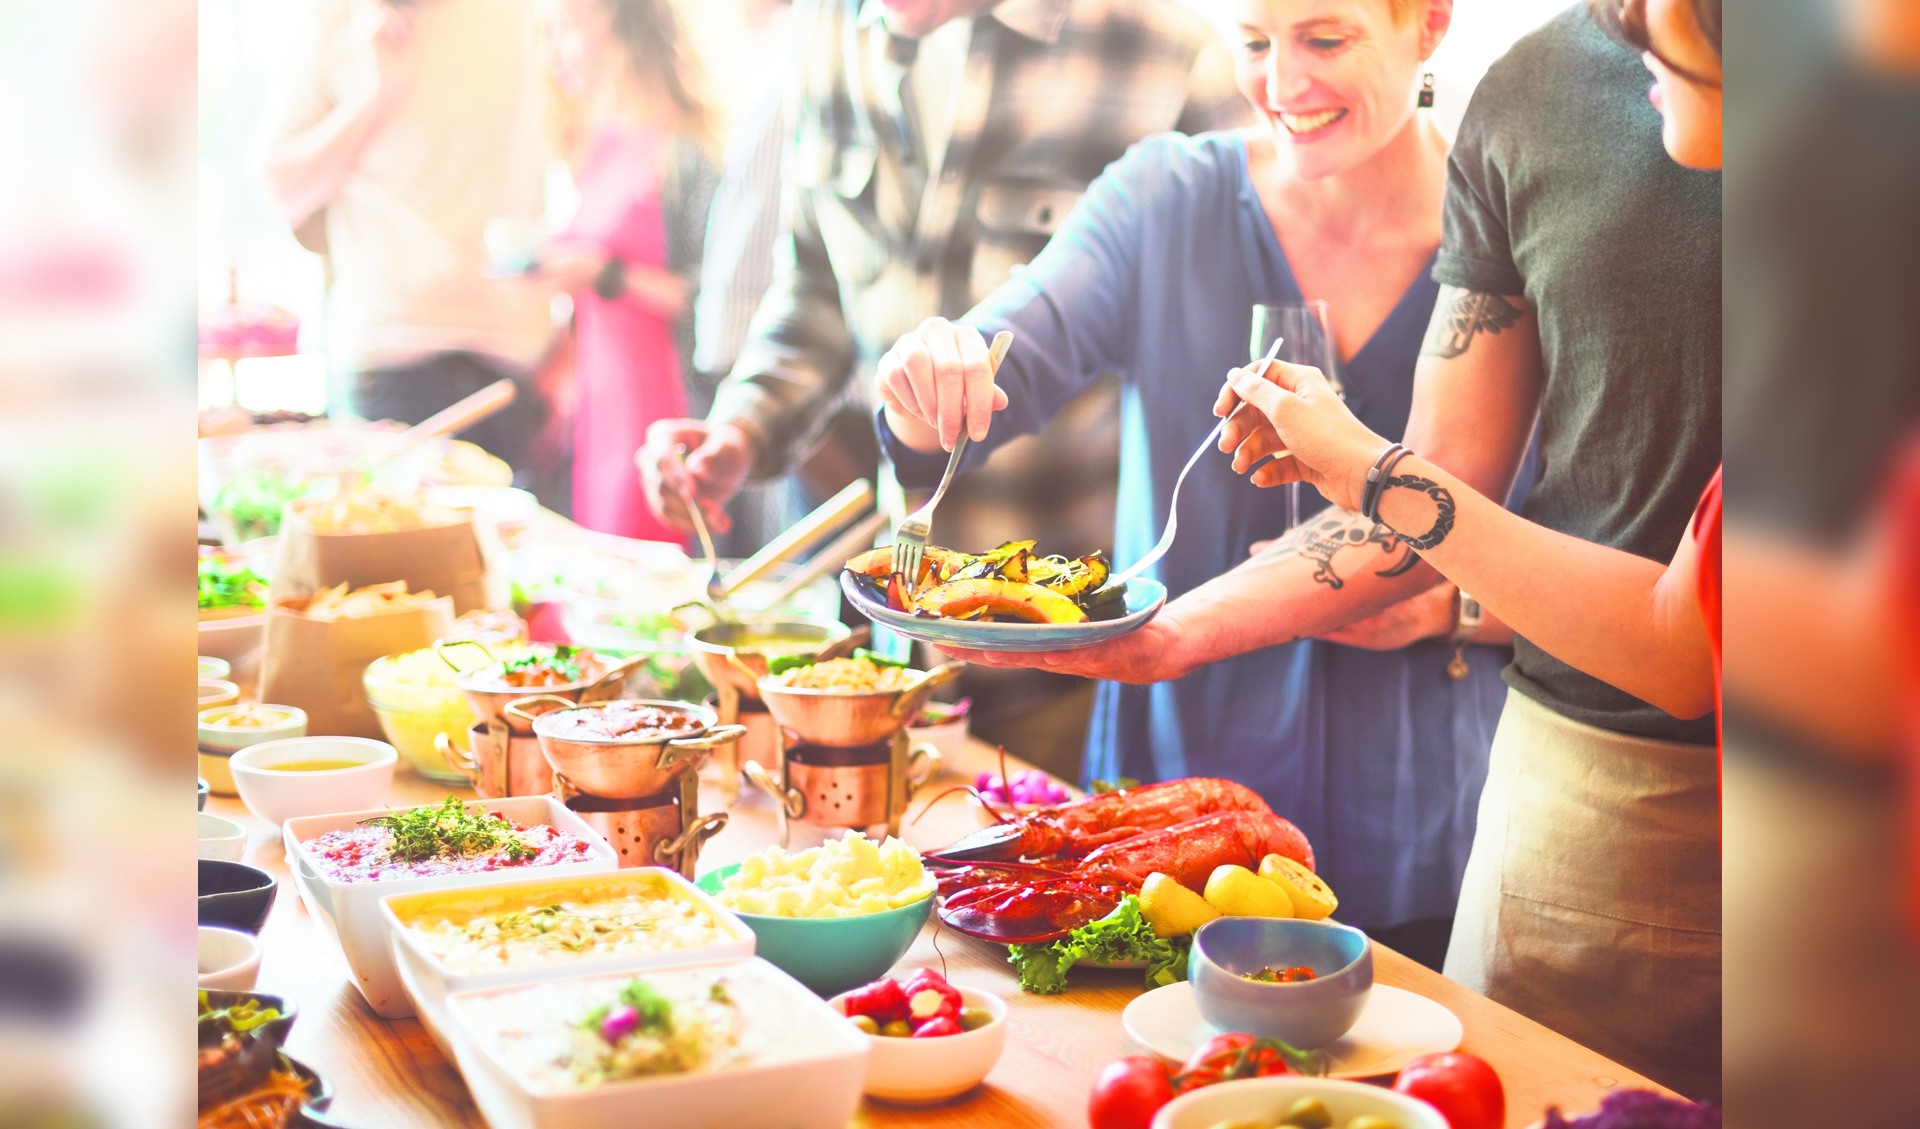 Foto: Wie komt er allemaal gezellig eten? FOTO SHUTTERSTOCK